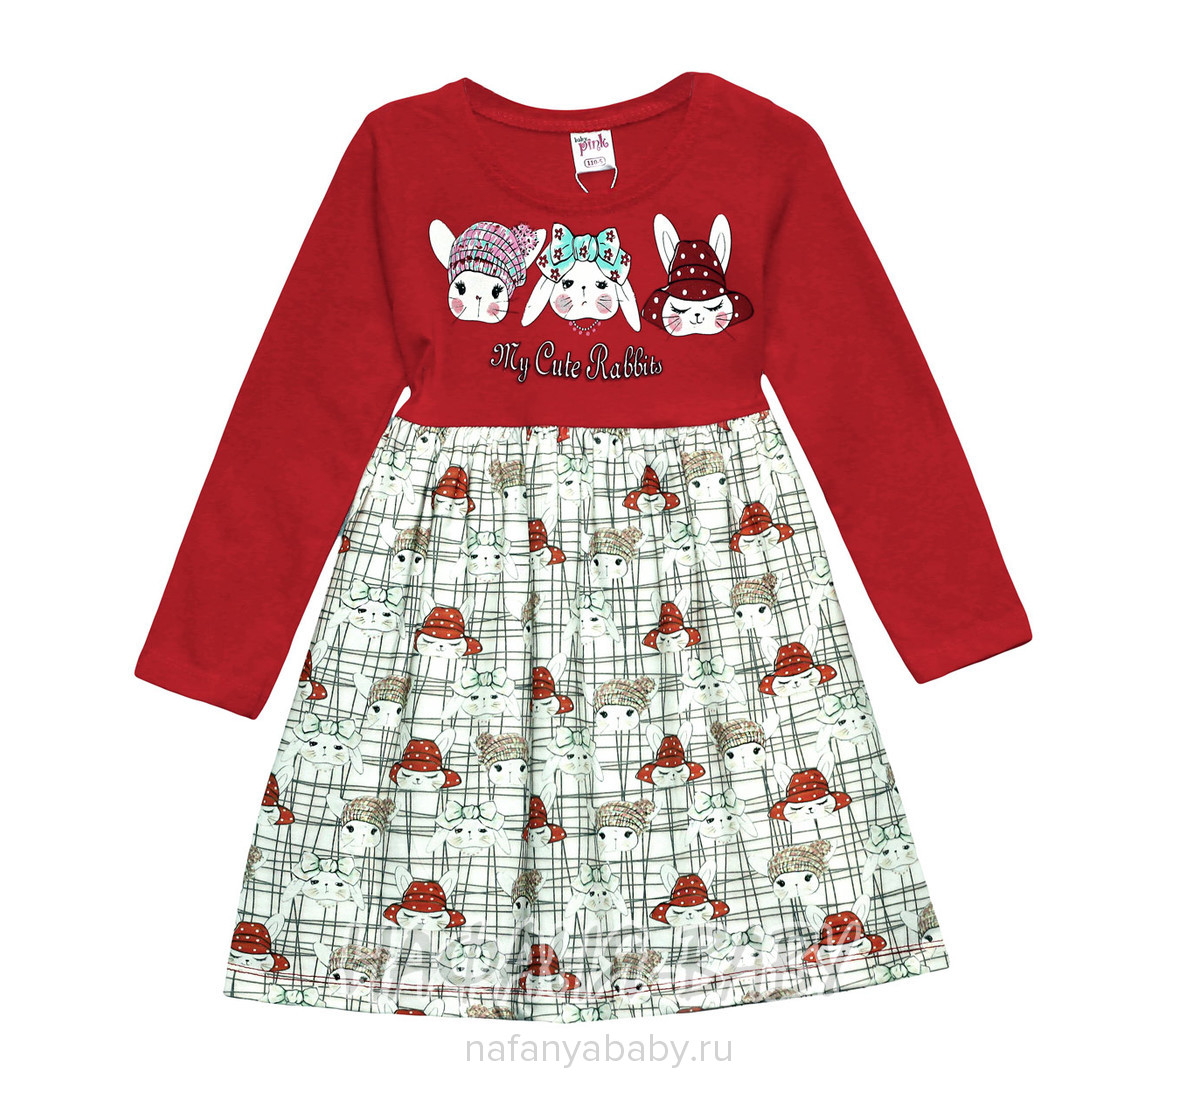 Детское платье PINK, купить в интернет магазине Нафаня. арт: 9229.